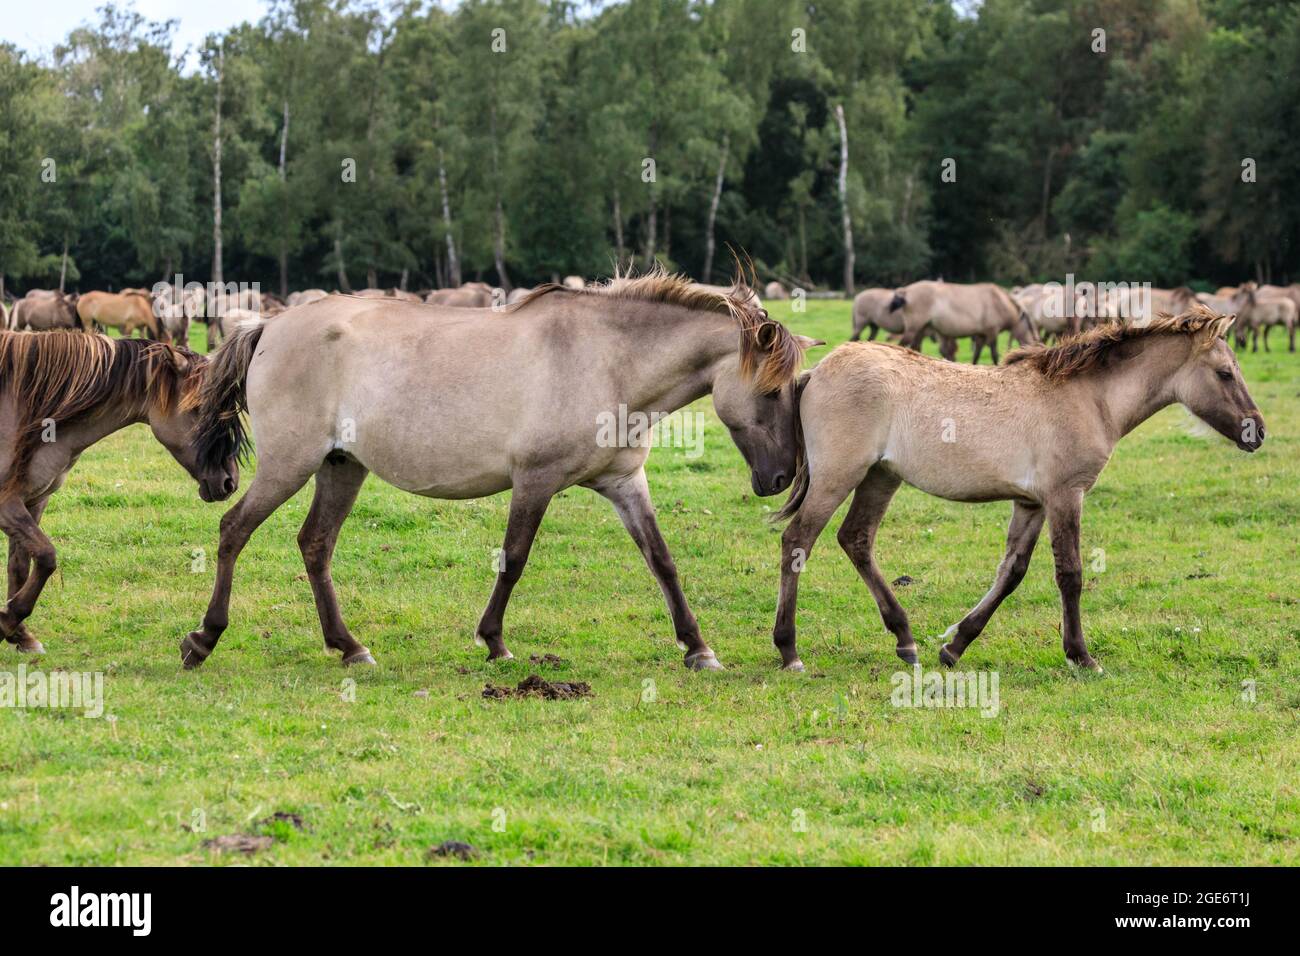 Mare marche avec foal. Les poneys sauvages de Dülmen (également appelés les Dülmener ou les Duelmen), race semi-sauvage dans le Muensterland, en Allemagne Banque D'Images